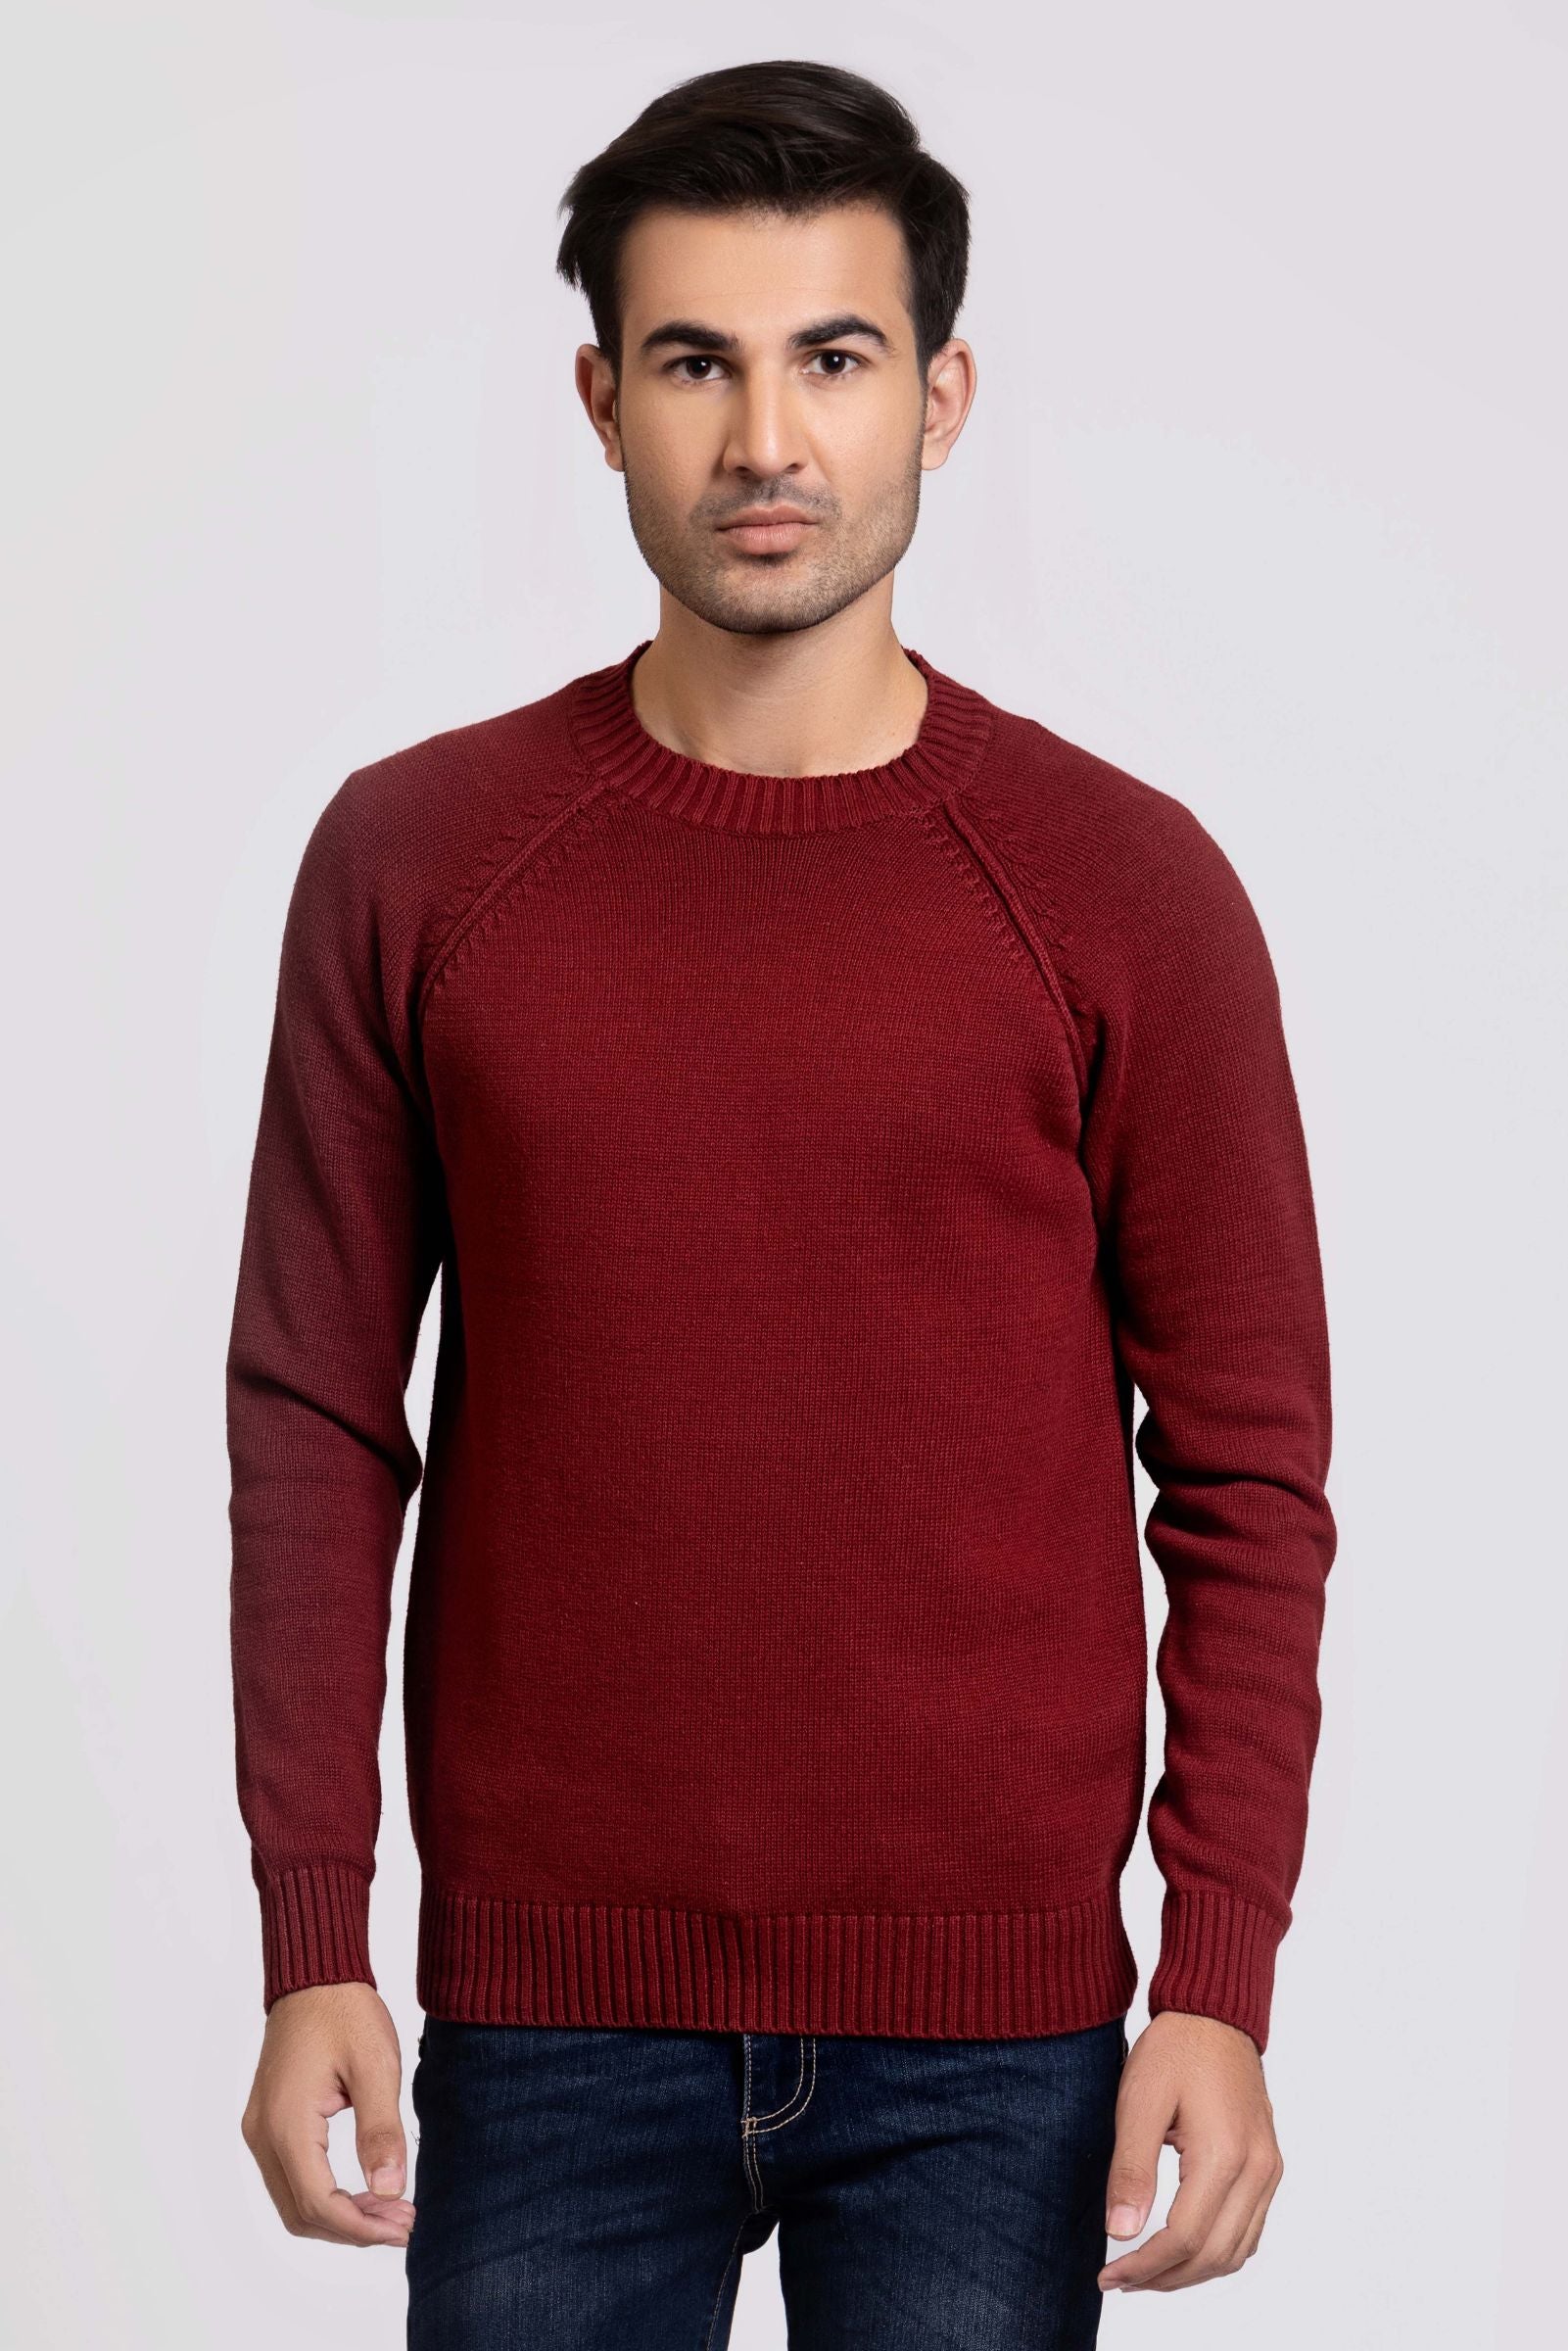 Cotton Round Neck Sweater